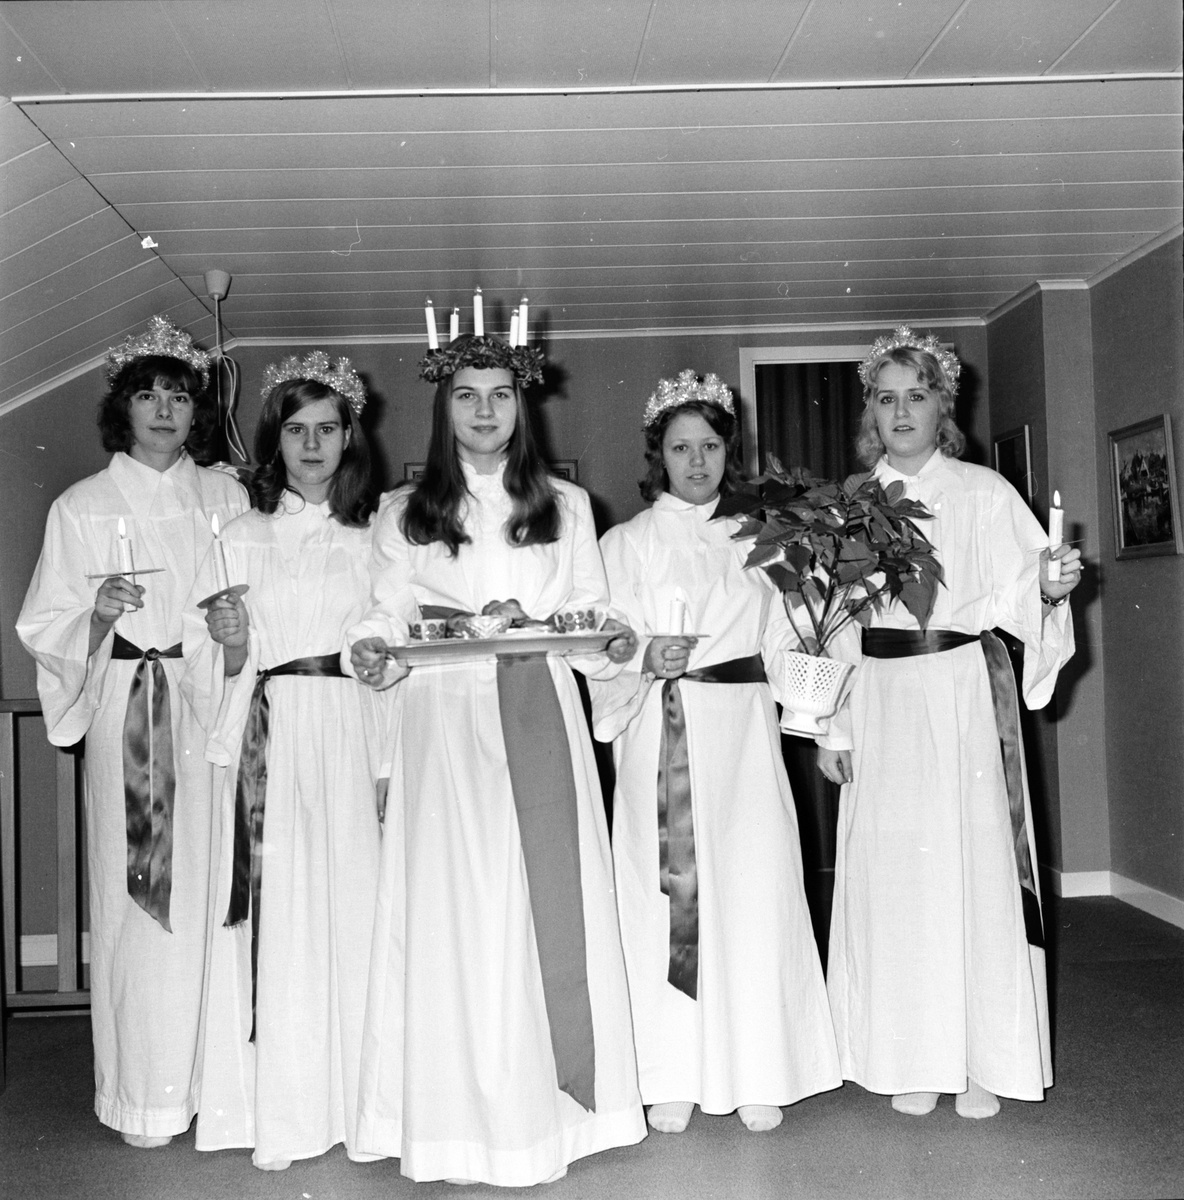 Arbrå, Lucia, 1971. 
Från vänster: Eva Joners, Ing-Britt Olsson, gift Hildingsson, lucian Britt-Mari Carlsson, gift Grahm, Ann Hagström, Marianne Olsson, gift Sundström.